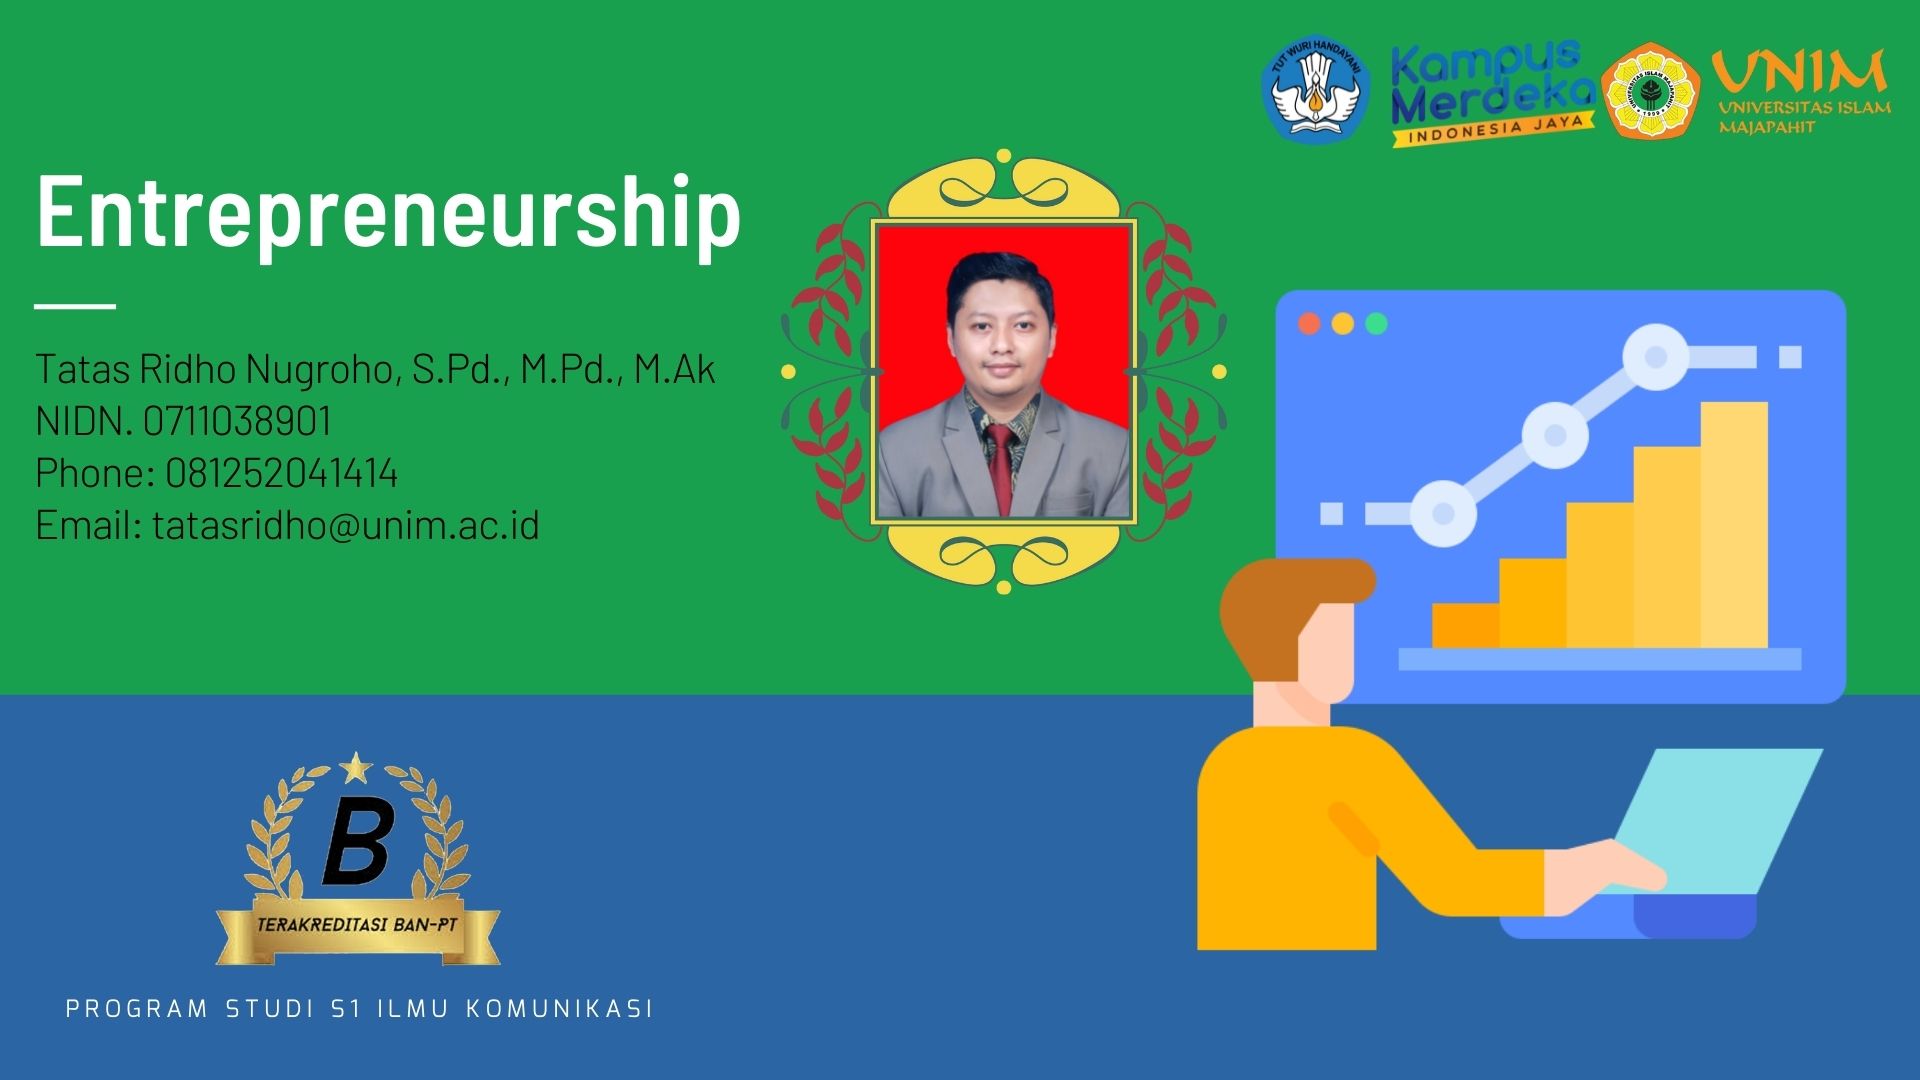 Kewirausahaan/Entrepreneurship